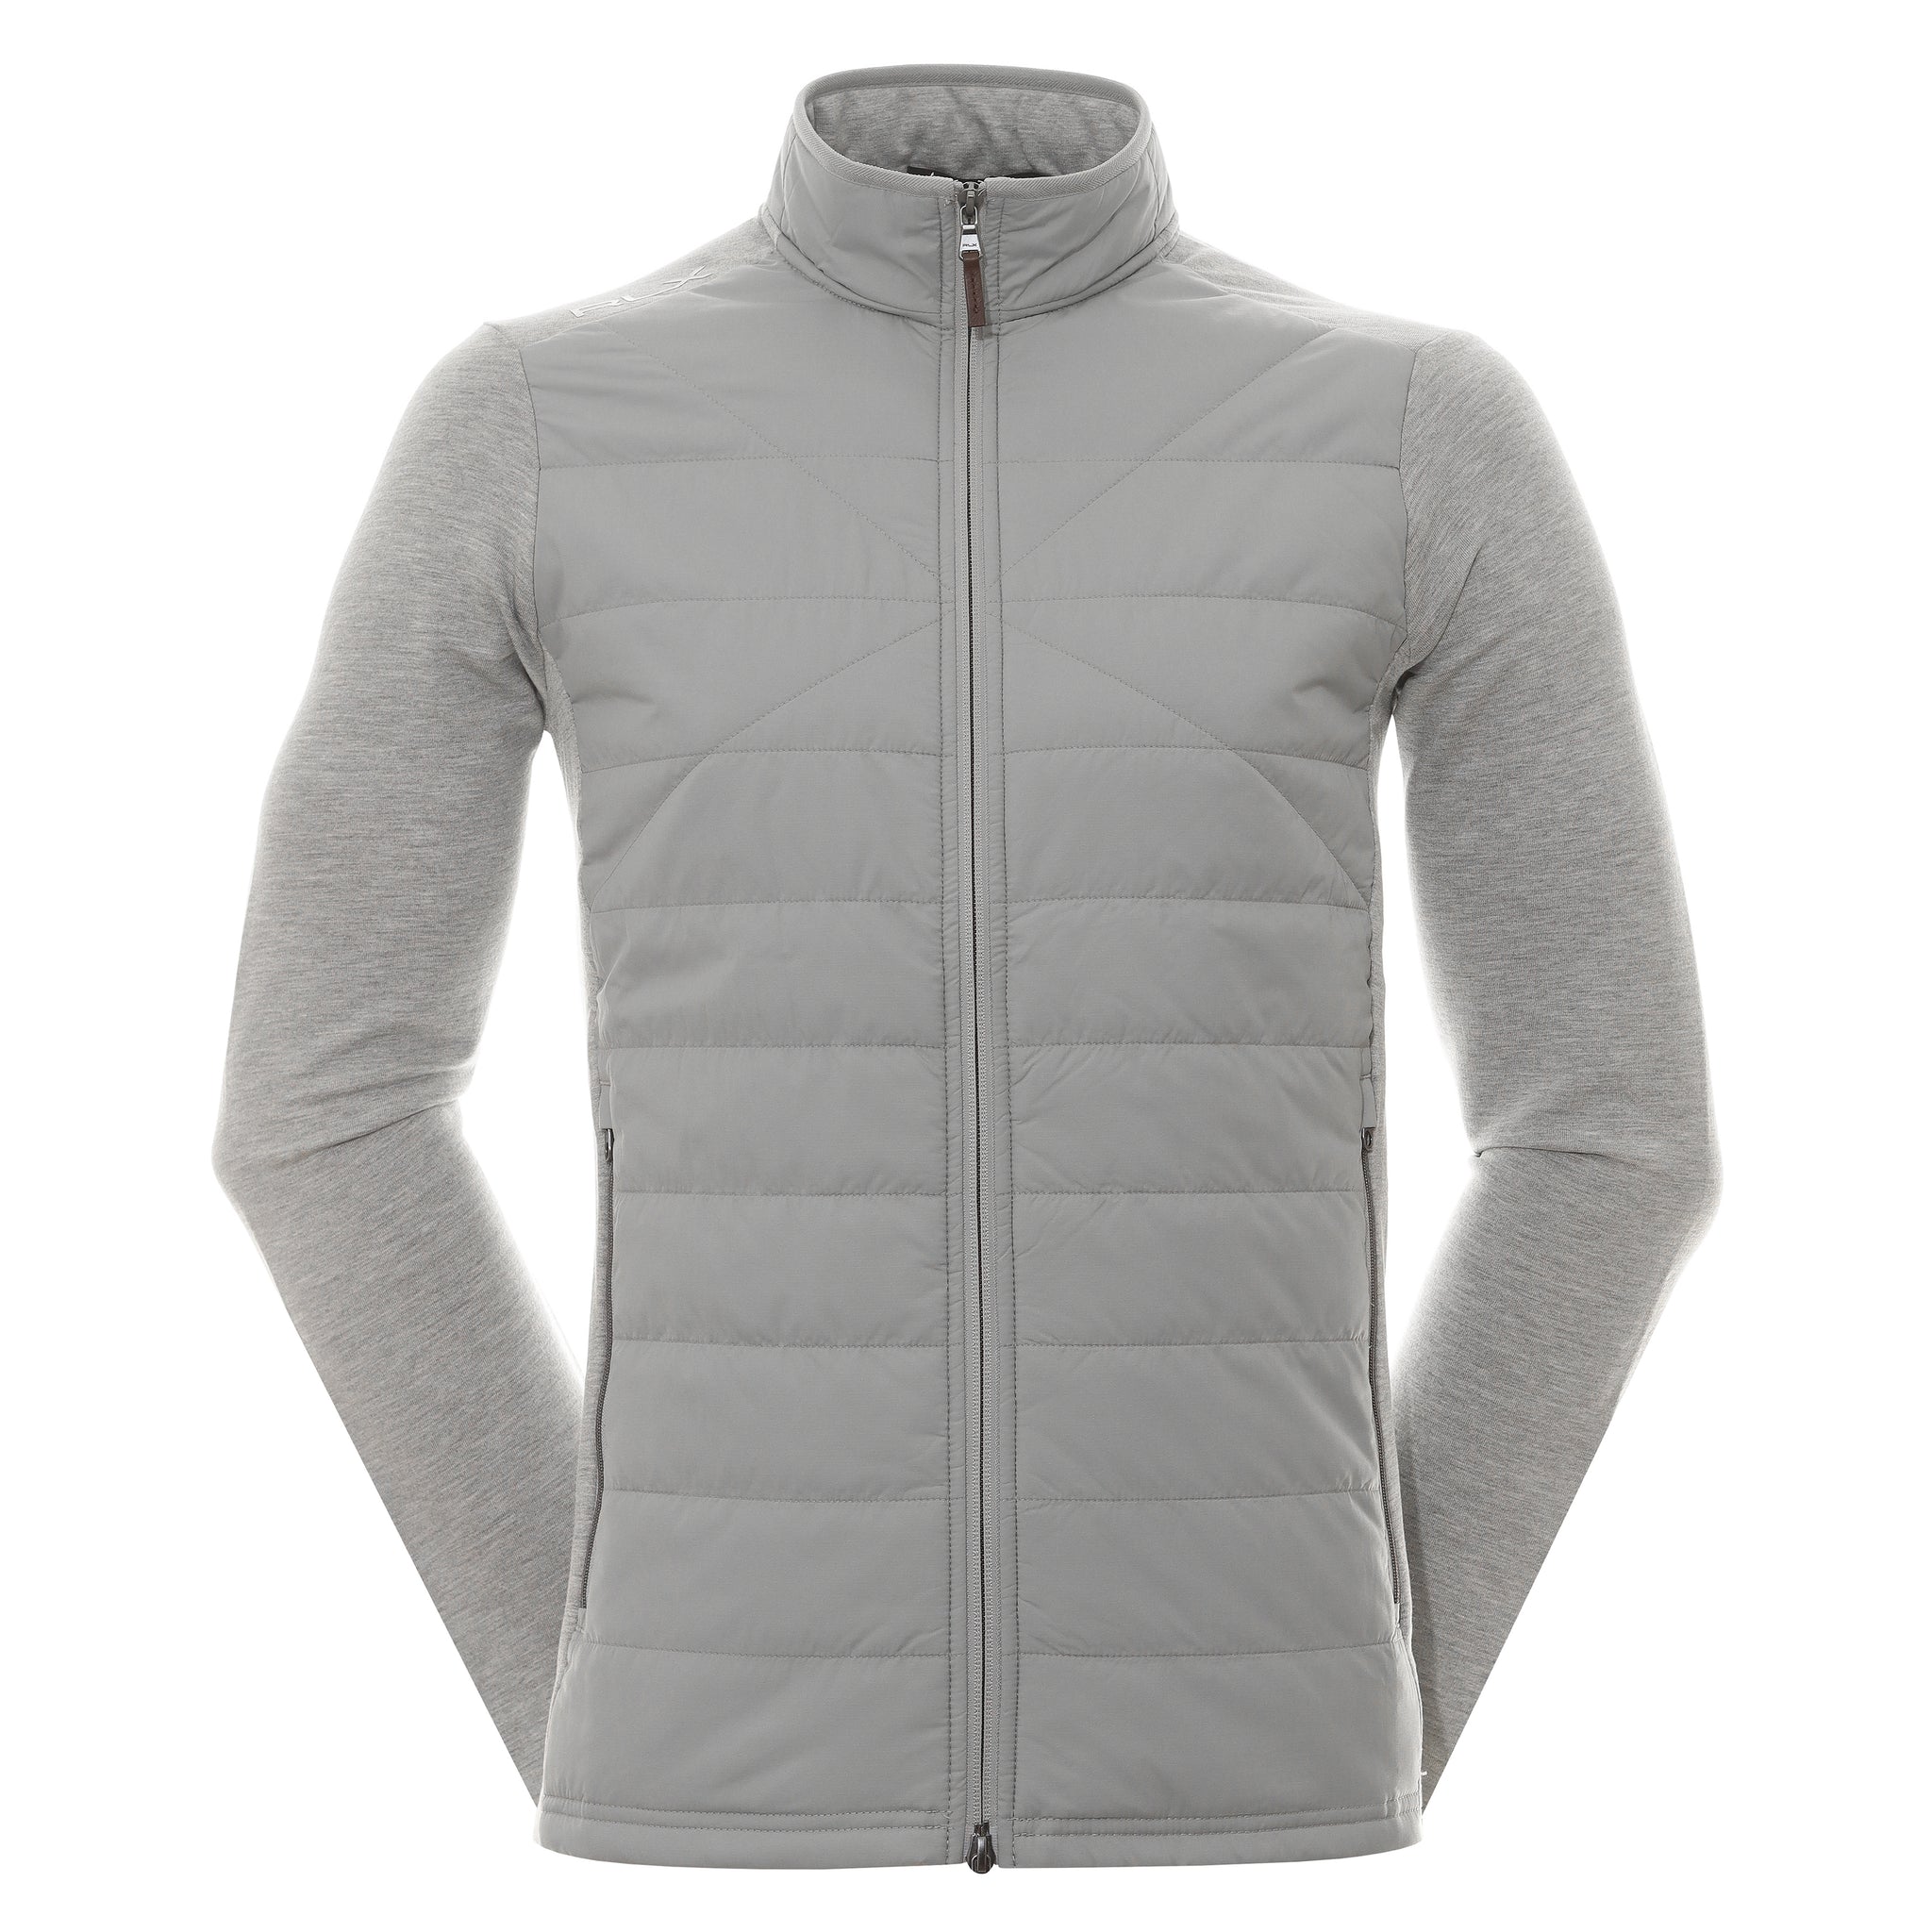 rlx-ralph-lauren-full-zip-hybrid-jacket-785899282-andover-heather-002